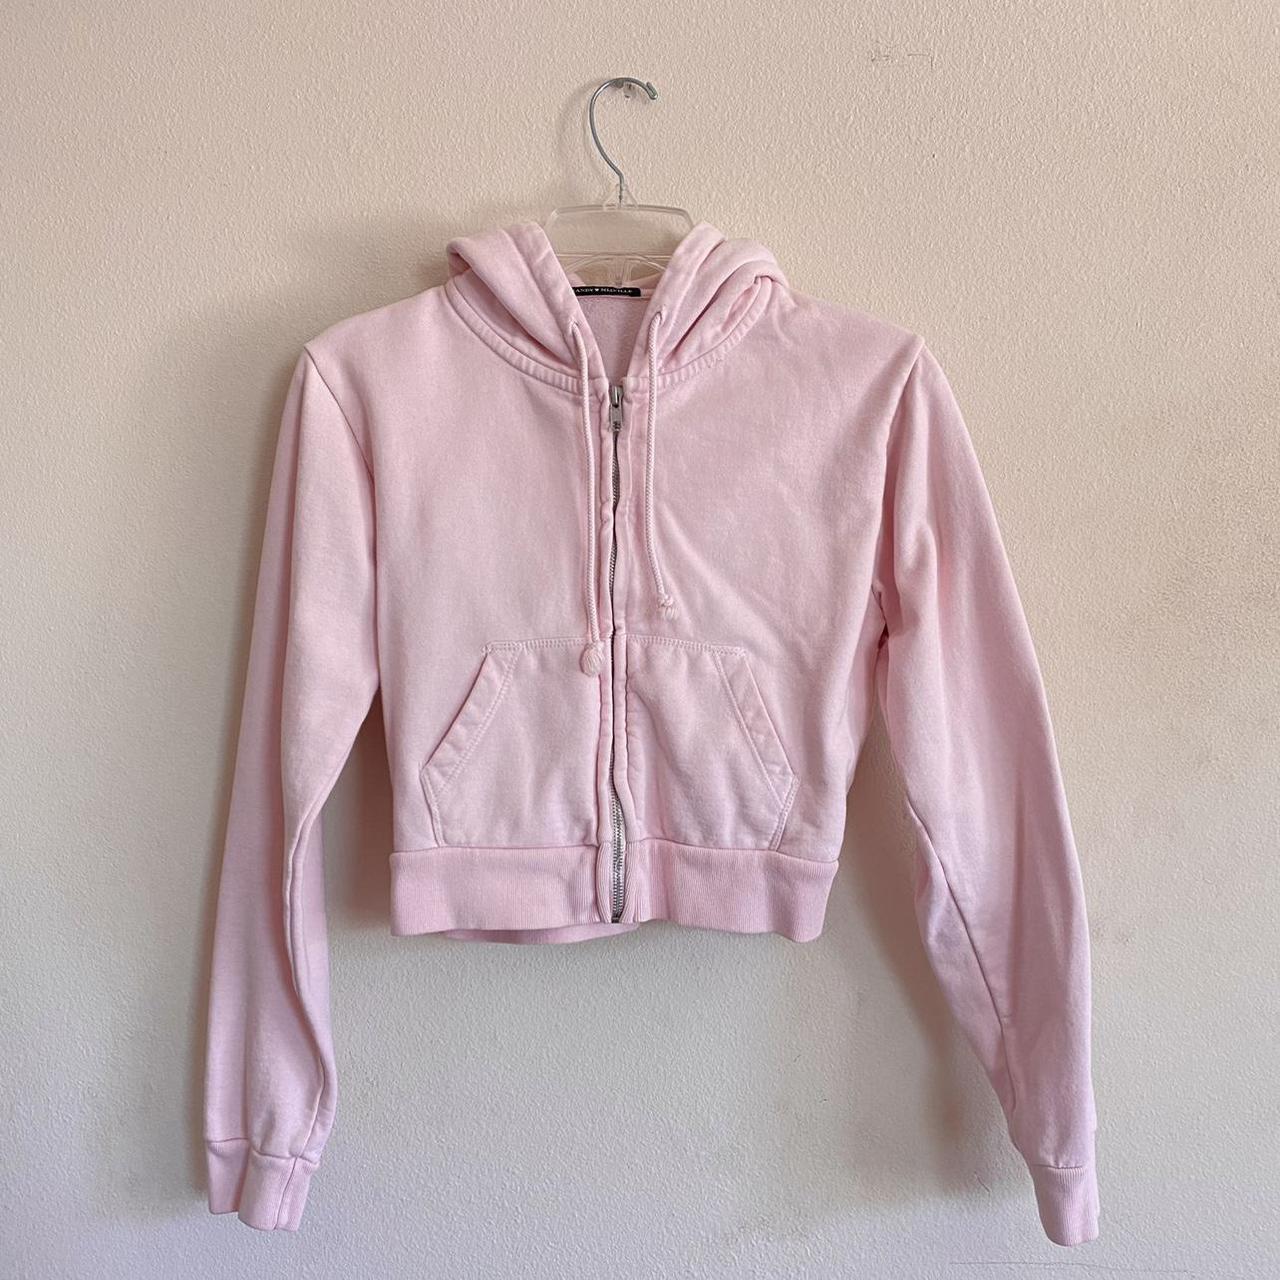 Brandy Melville / John Galt bubblegum pink crystal zip up hoodie